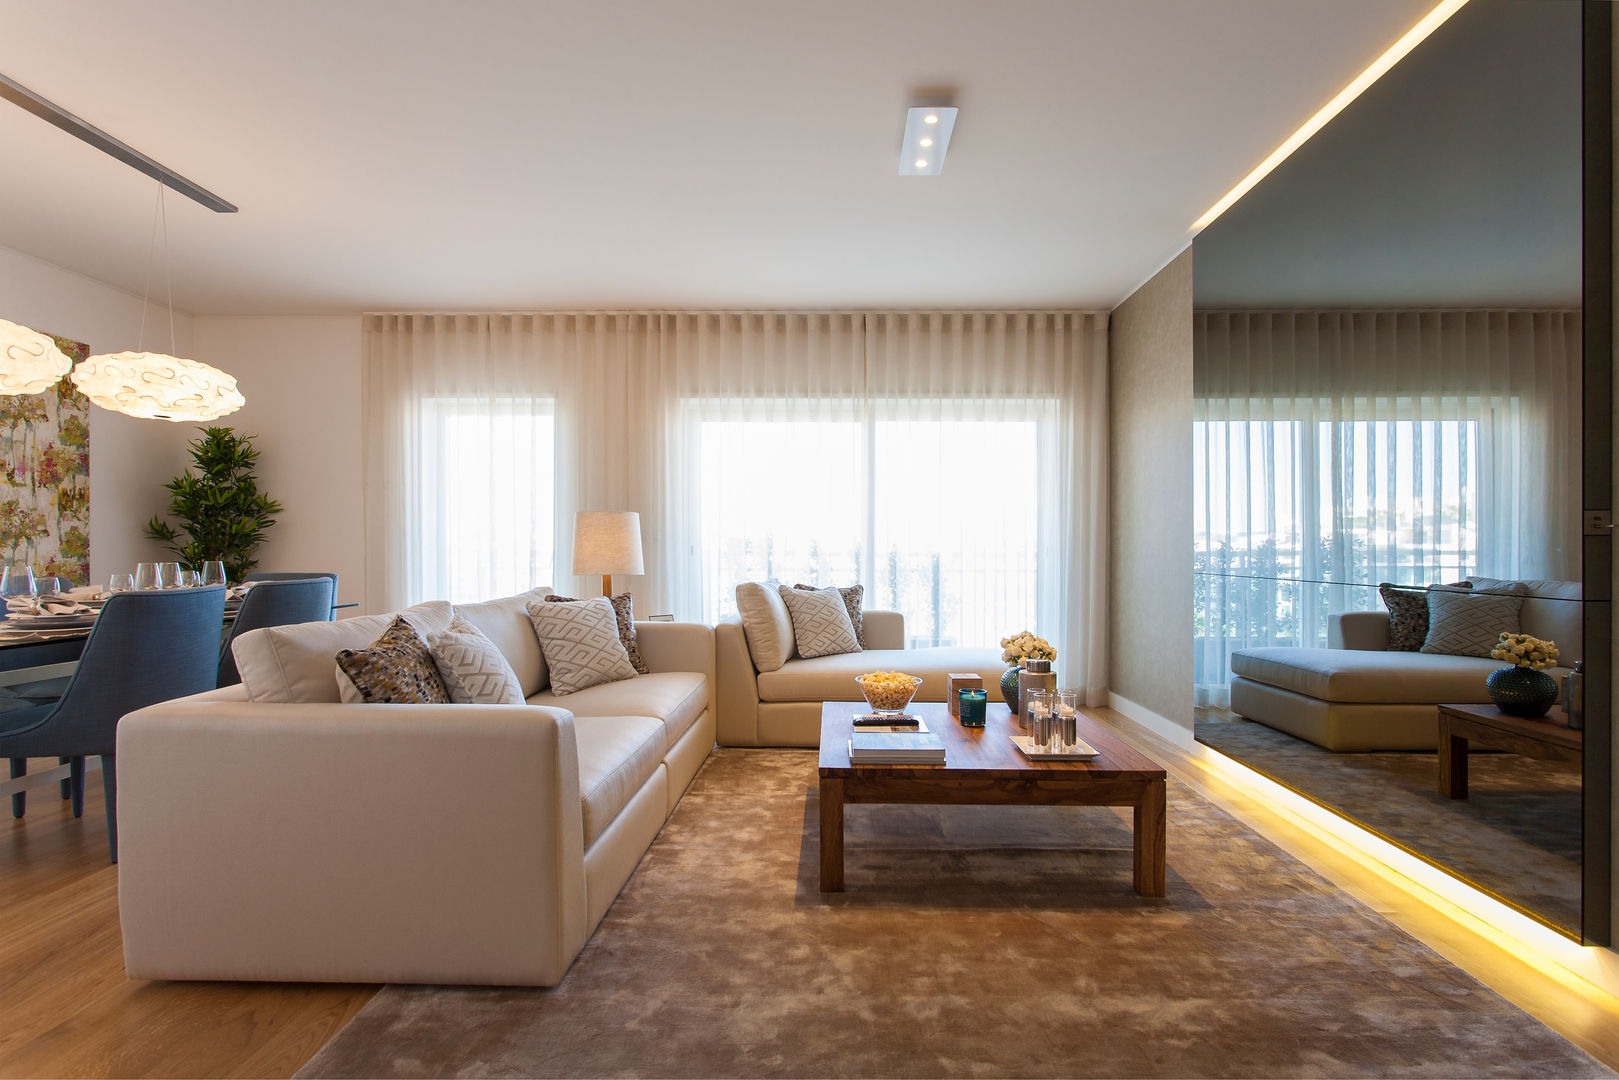 Andar Modelo - Oeiras, Traço Magenta - Design de Interiores Traço Magenta - Design de Interiores Living room